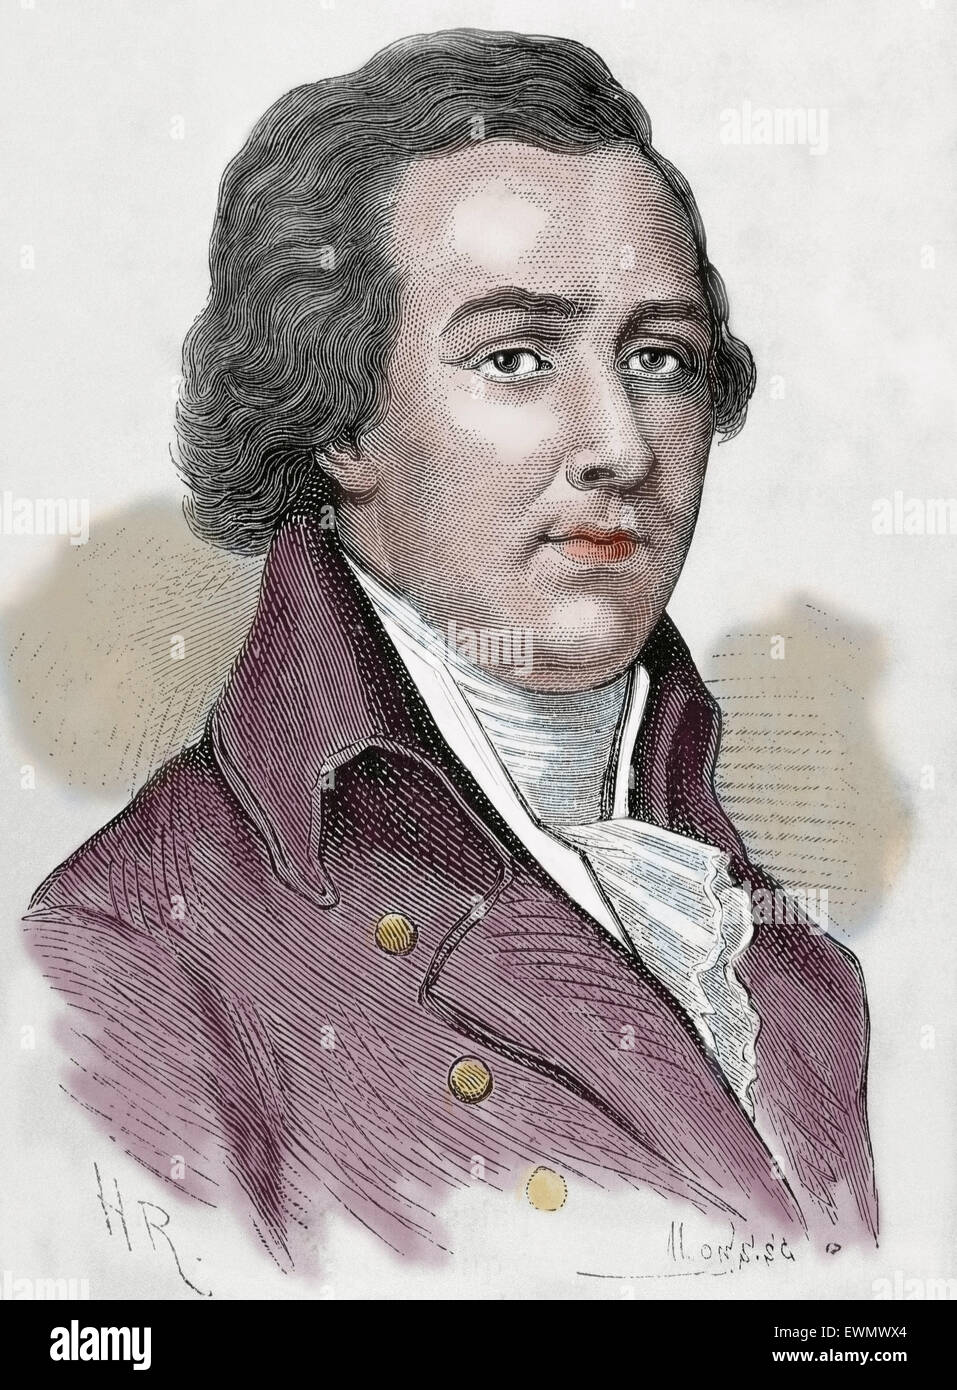 William Pitt, 1. Earl of Chatham (1708-1778). Britischer Staatsmann der Whig-Gruppe. Gravur. Porträt. Farbige. Stockfoto